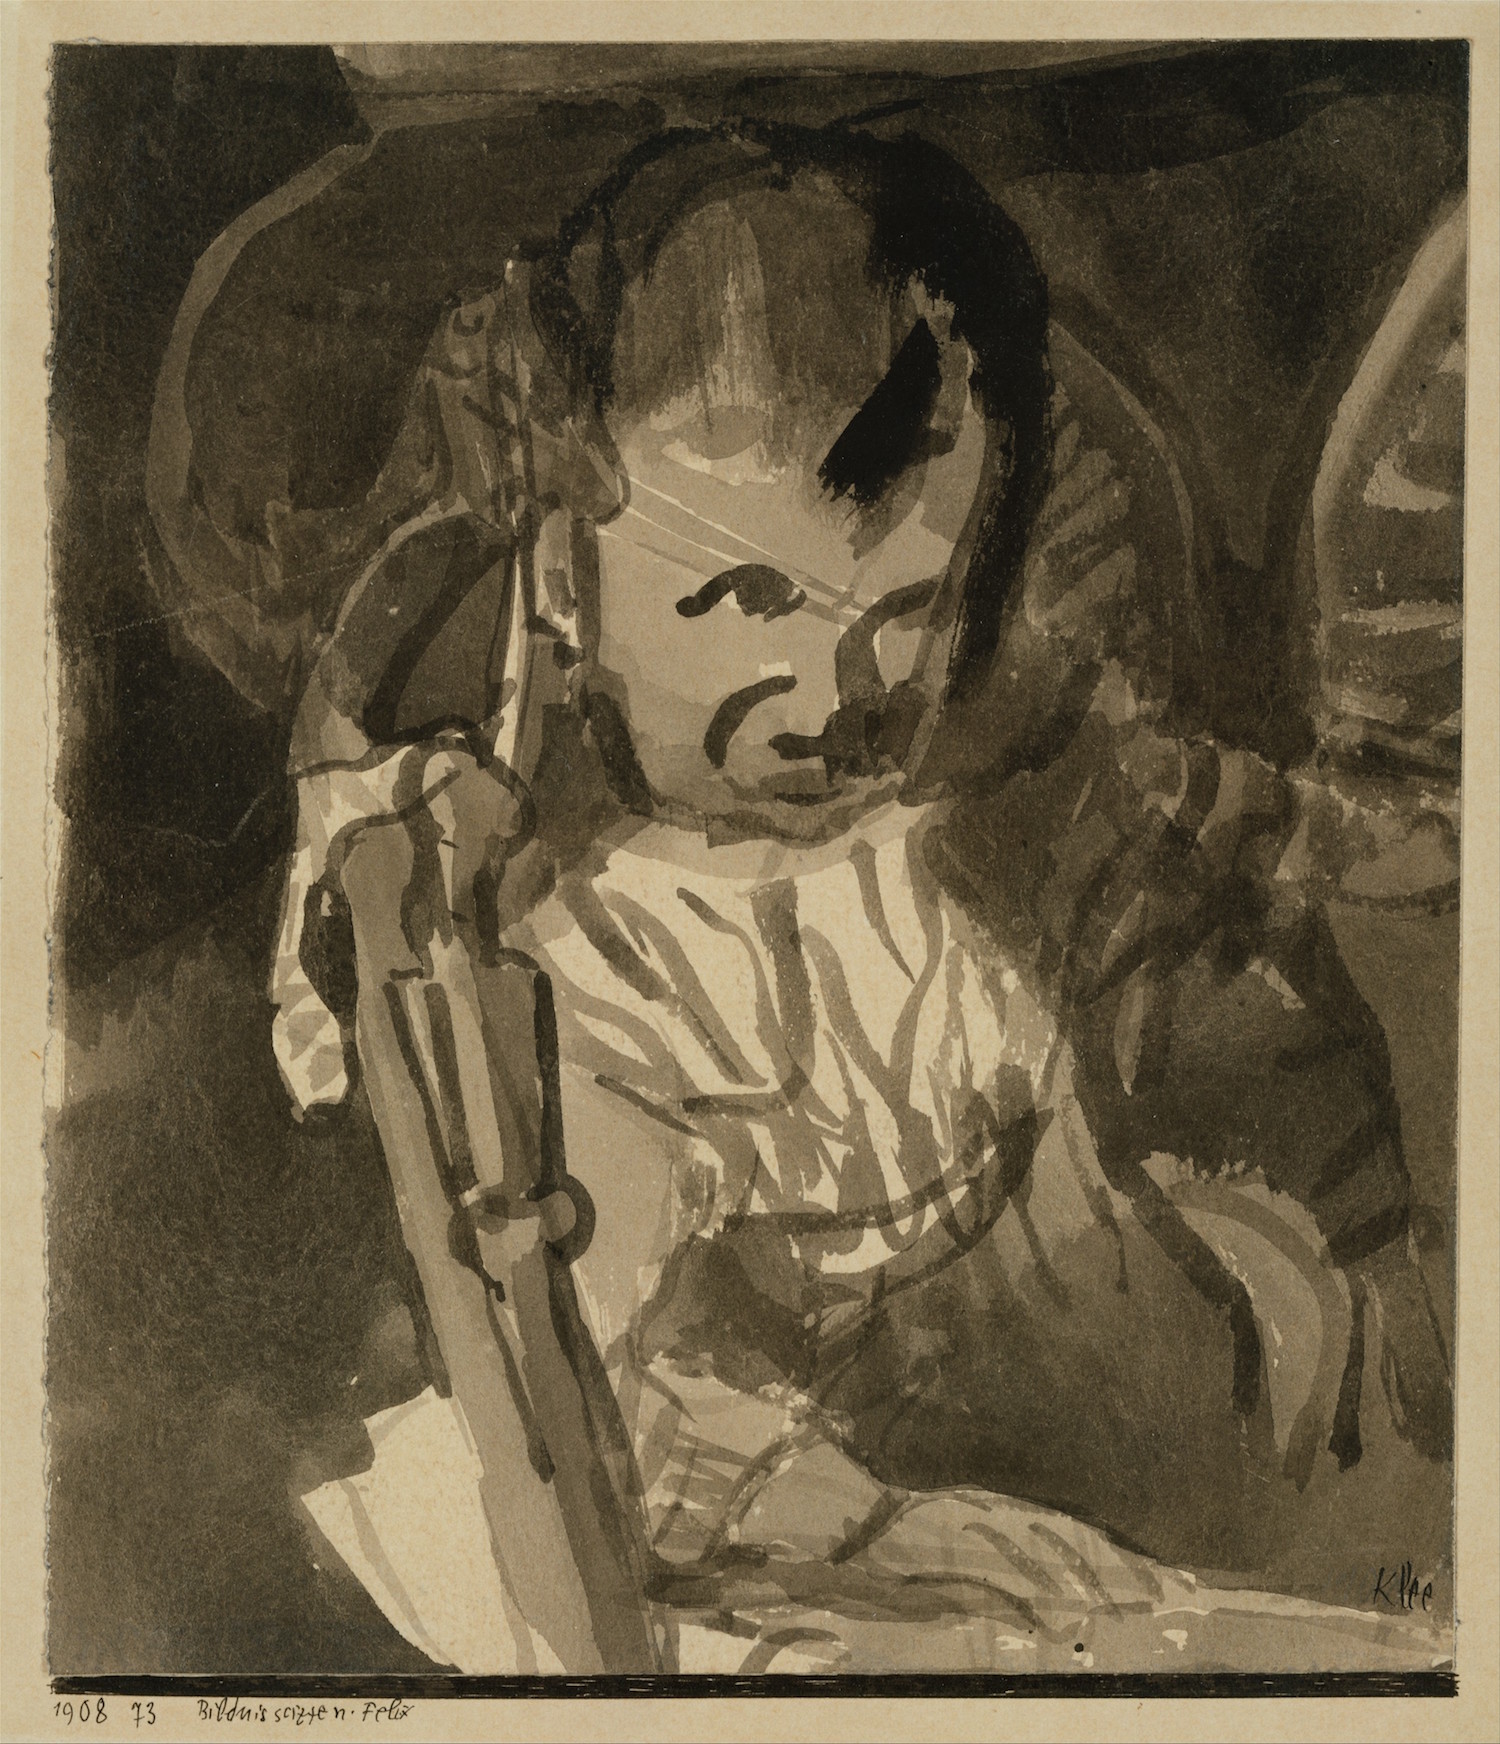 Felix Klee, by Paul Klee (1908)